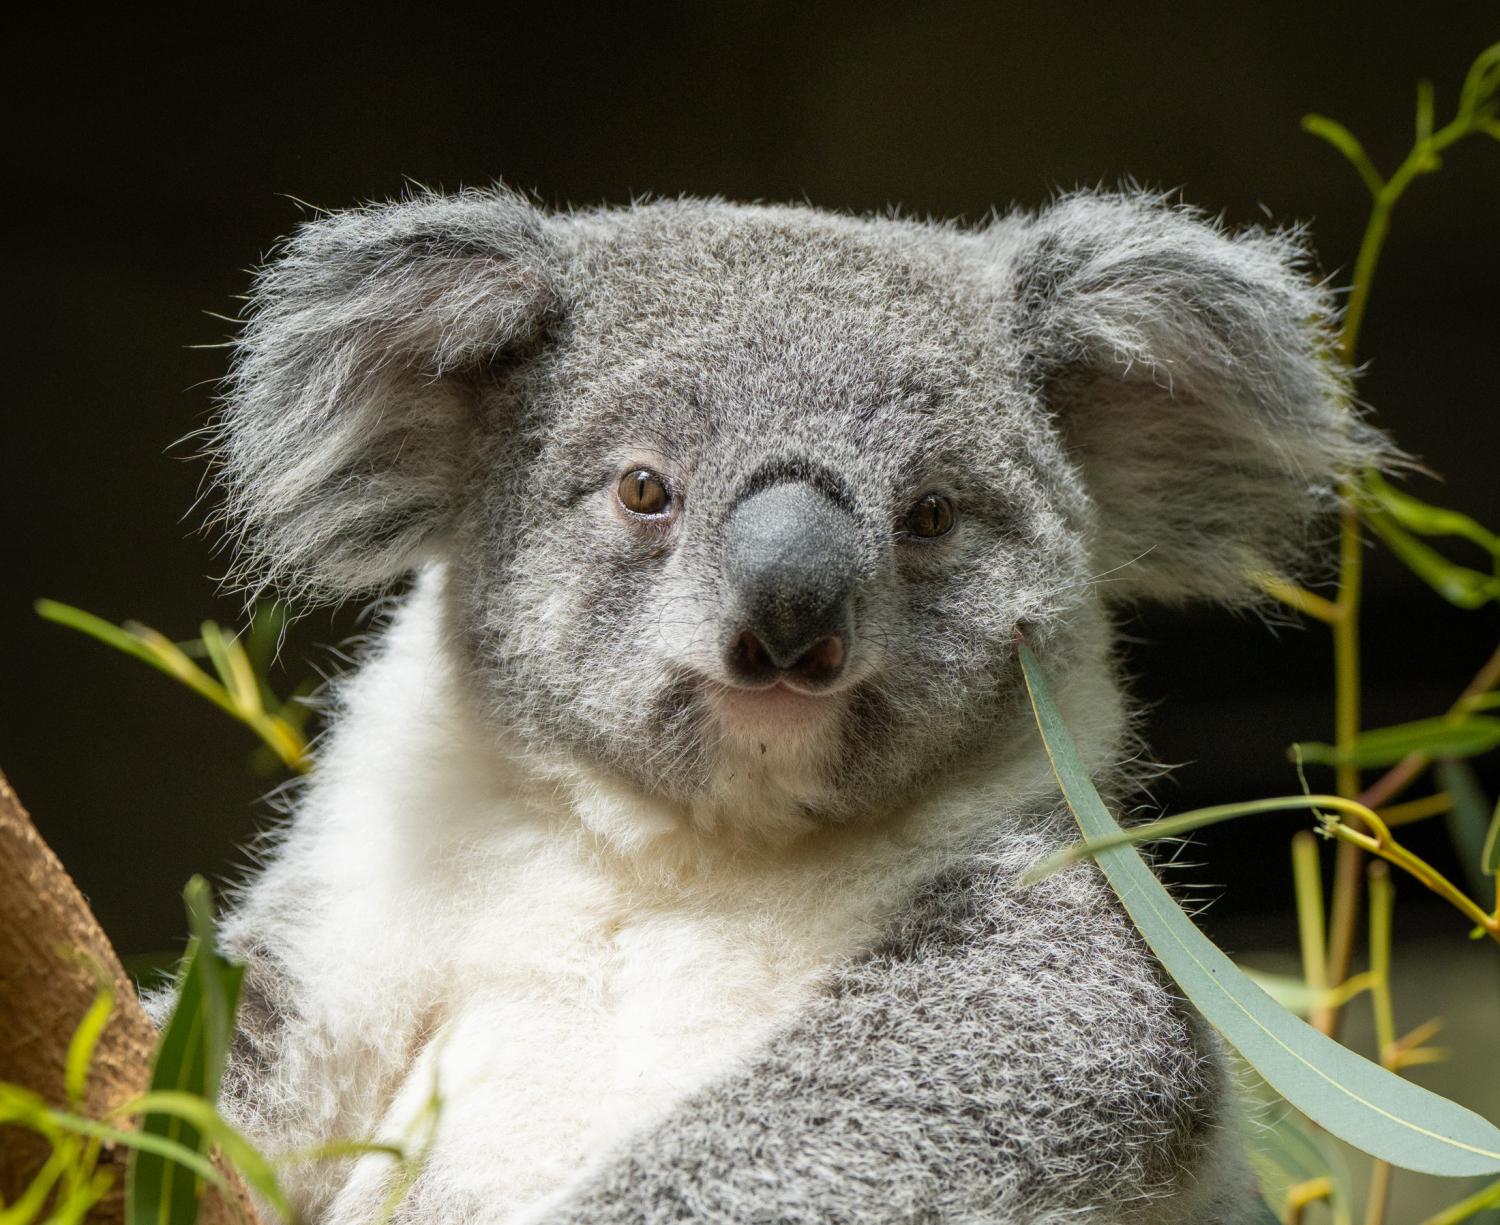 koala near tree branches